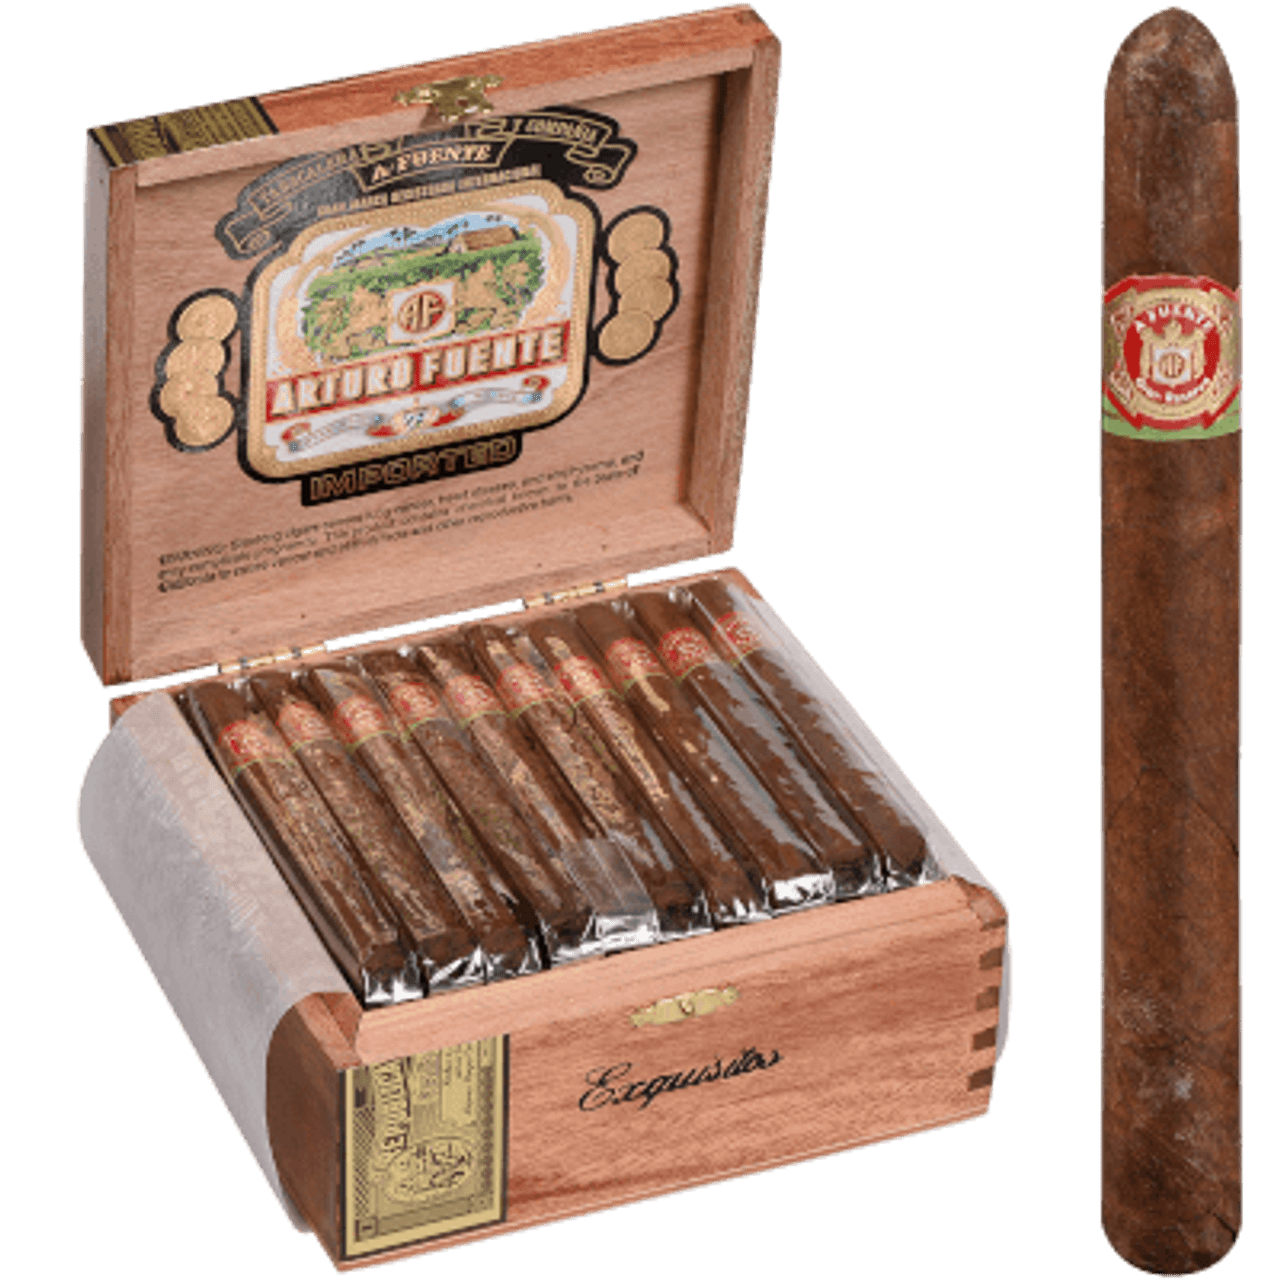 Arturo Fuentes Exquisitos, Empty cigar box